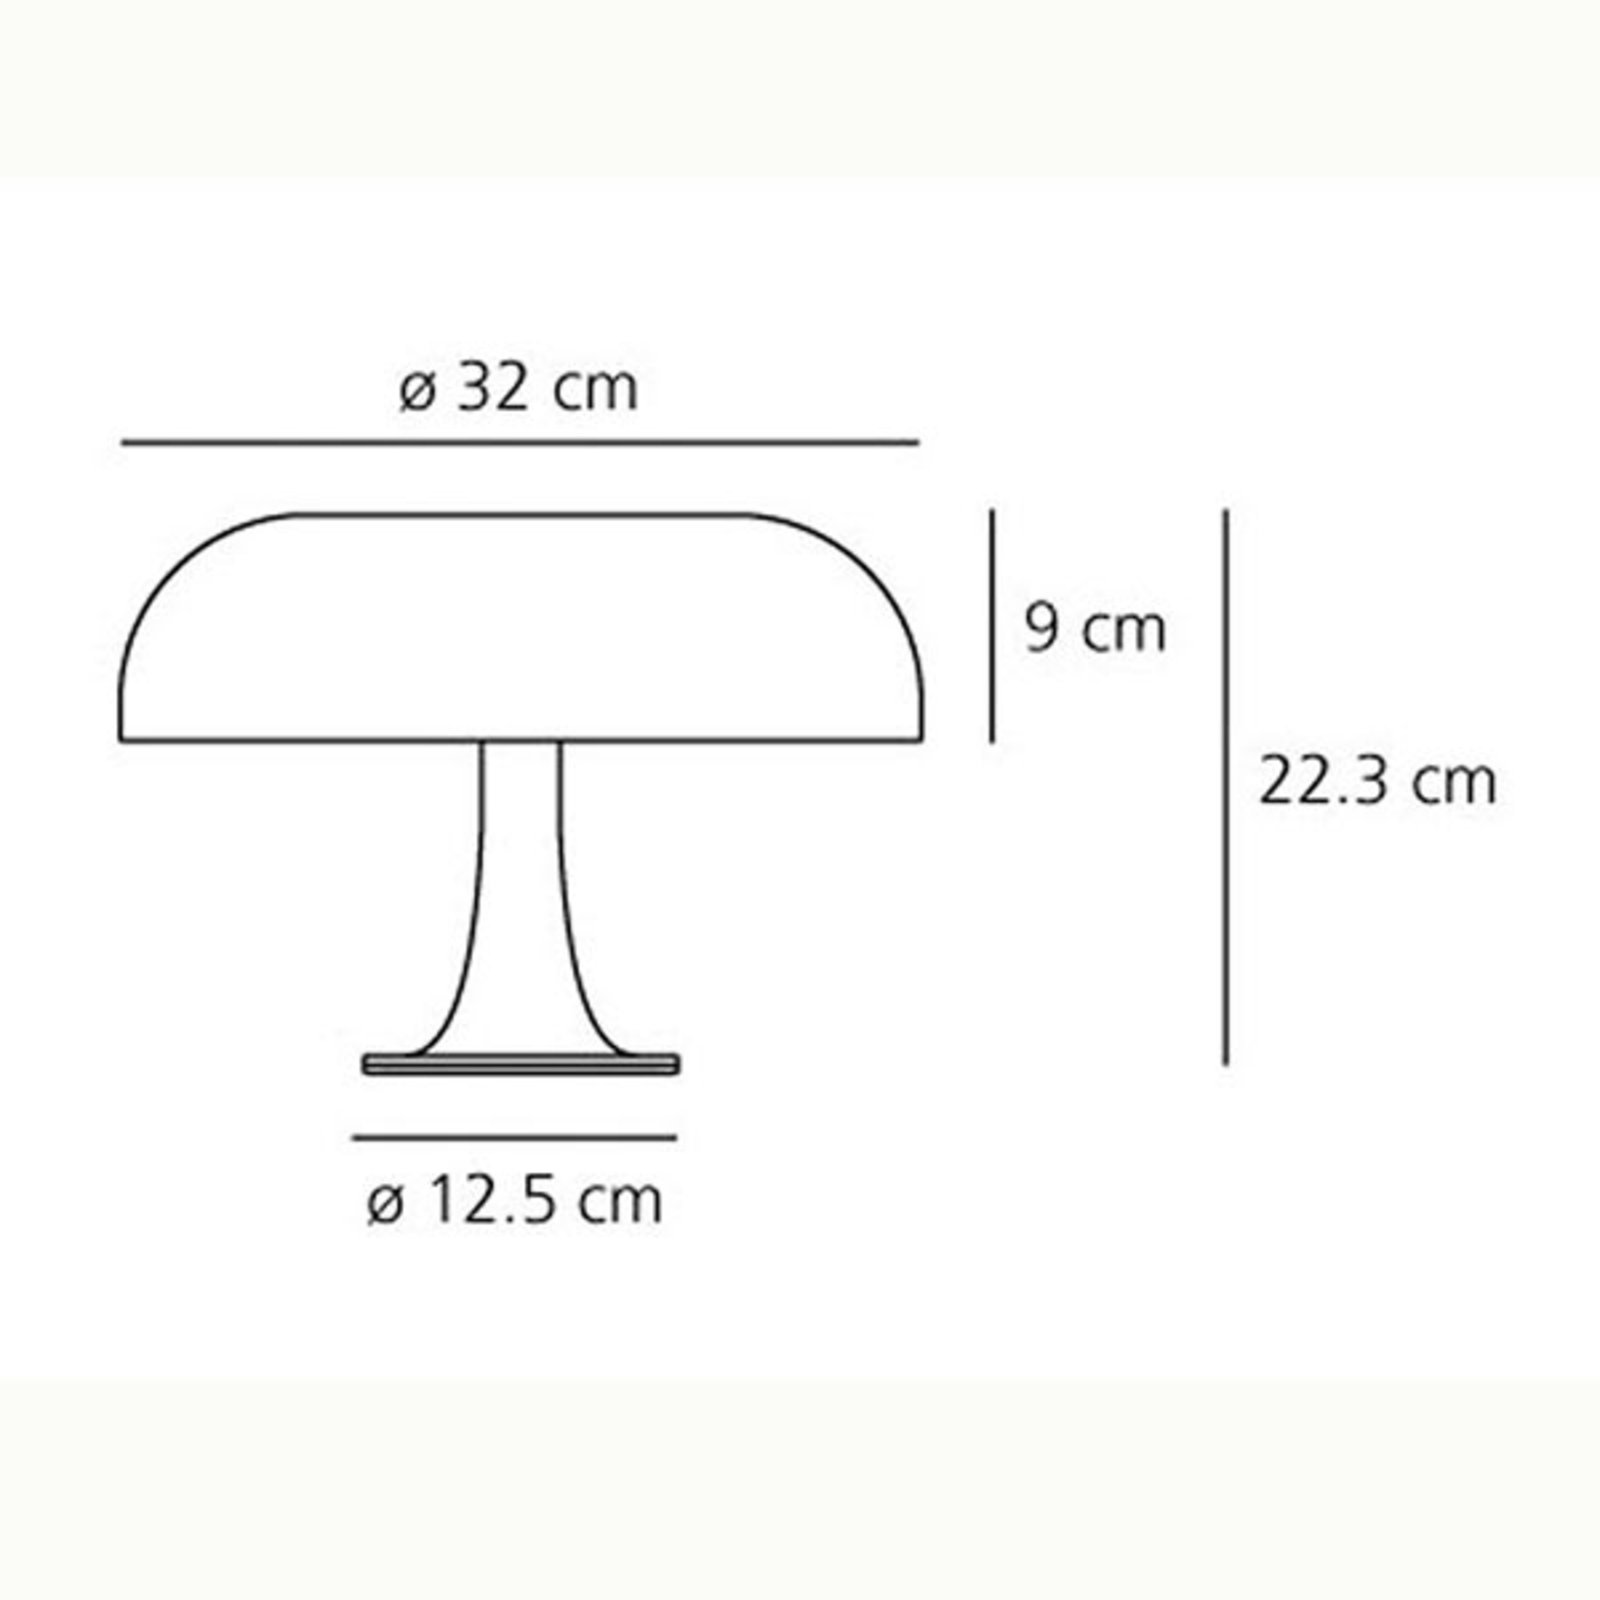 Artemide Nessino - designer table lamp, orange